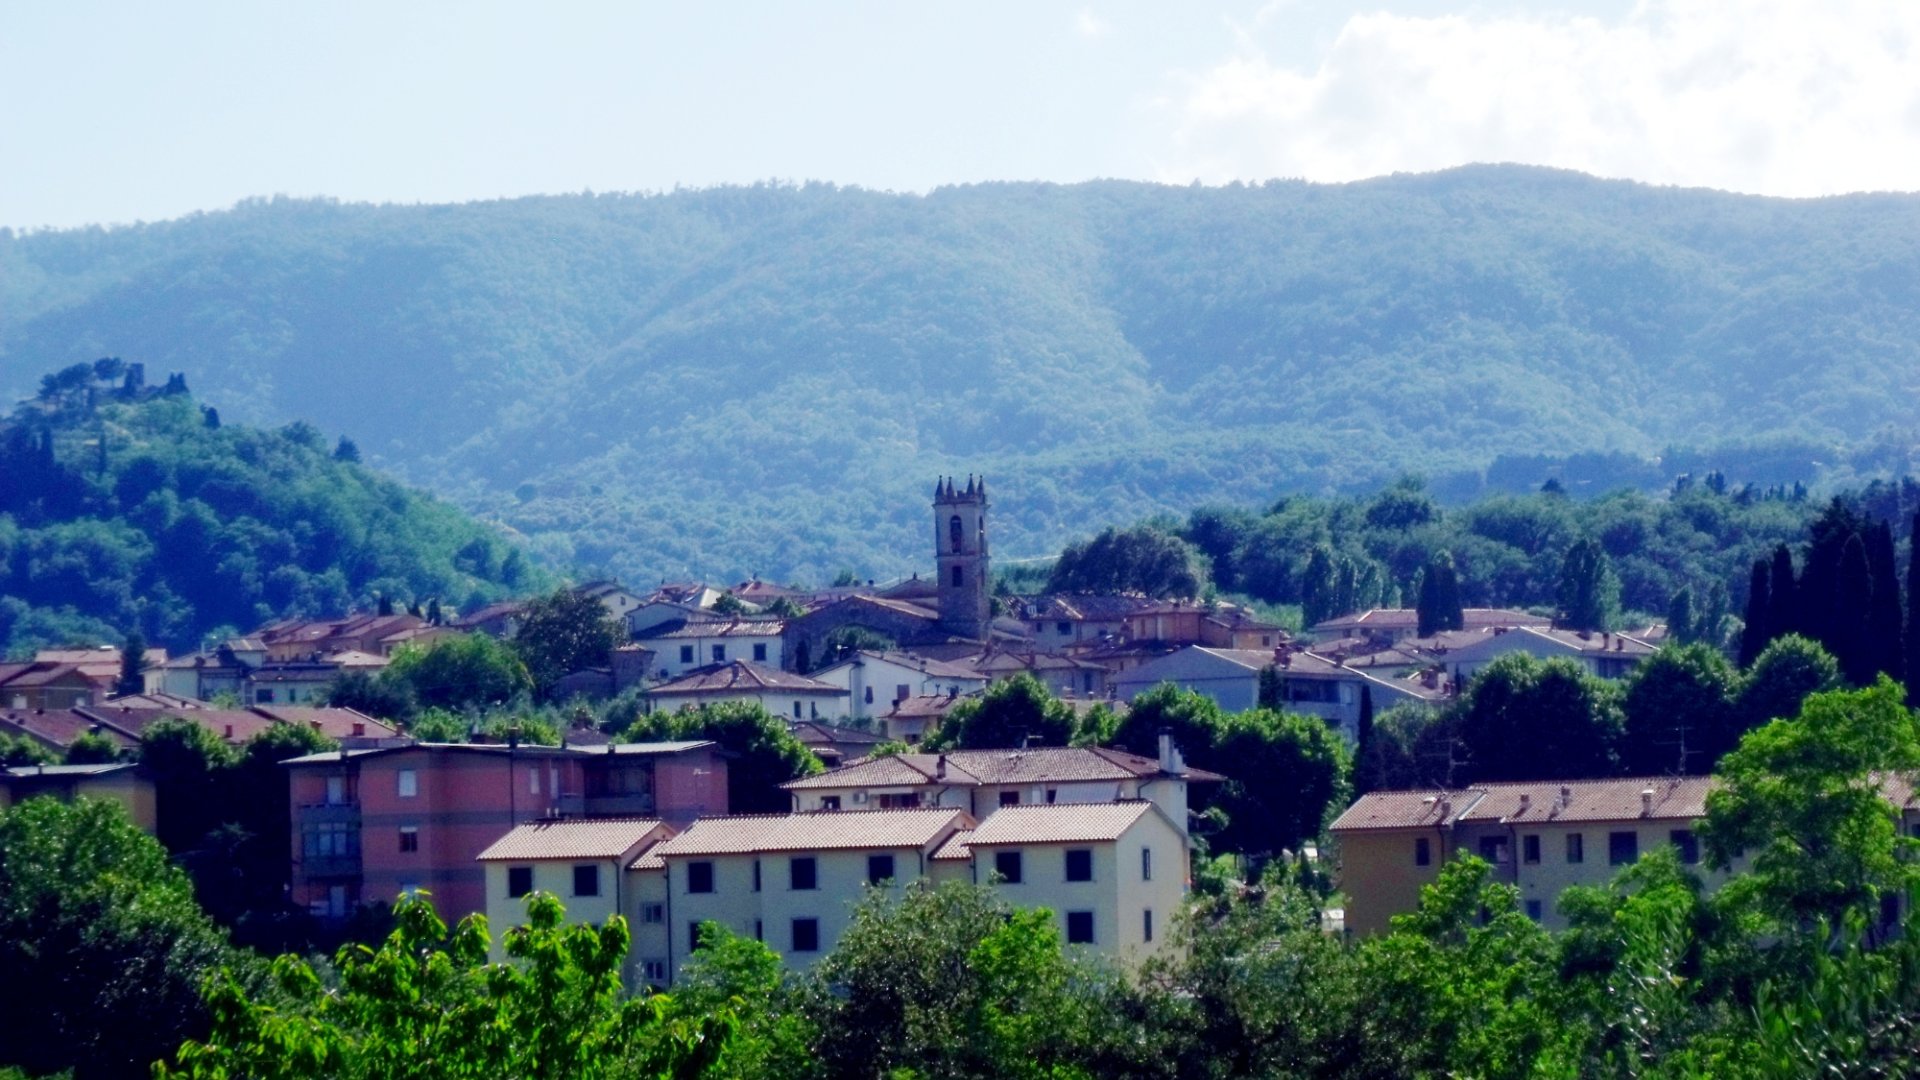 View of Cavriglia